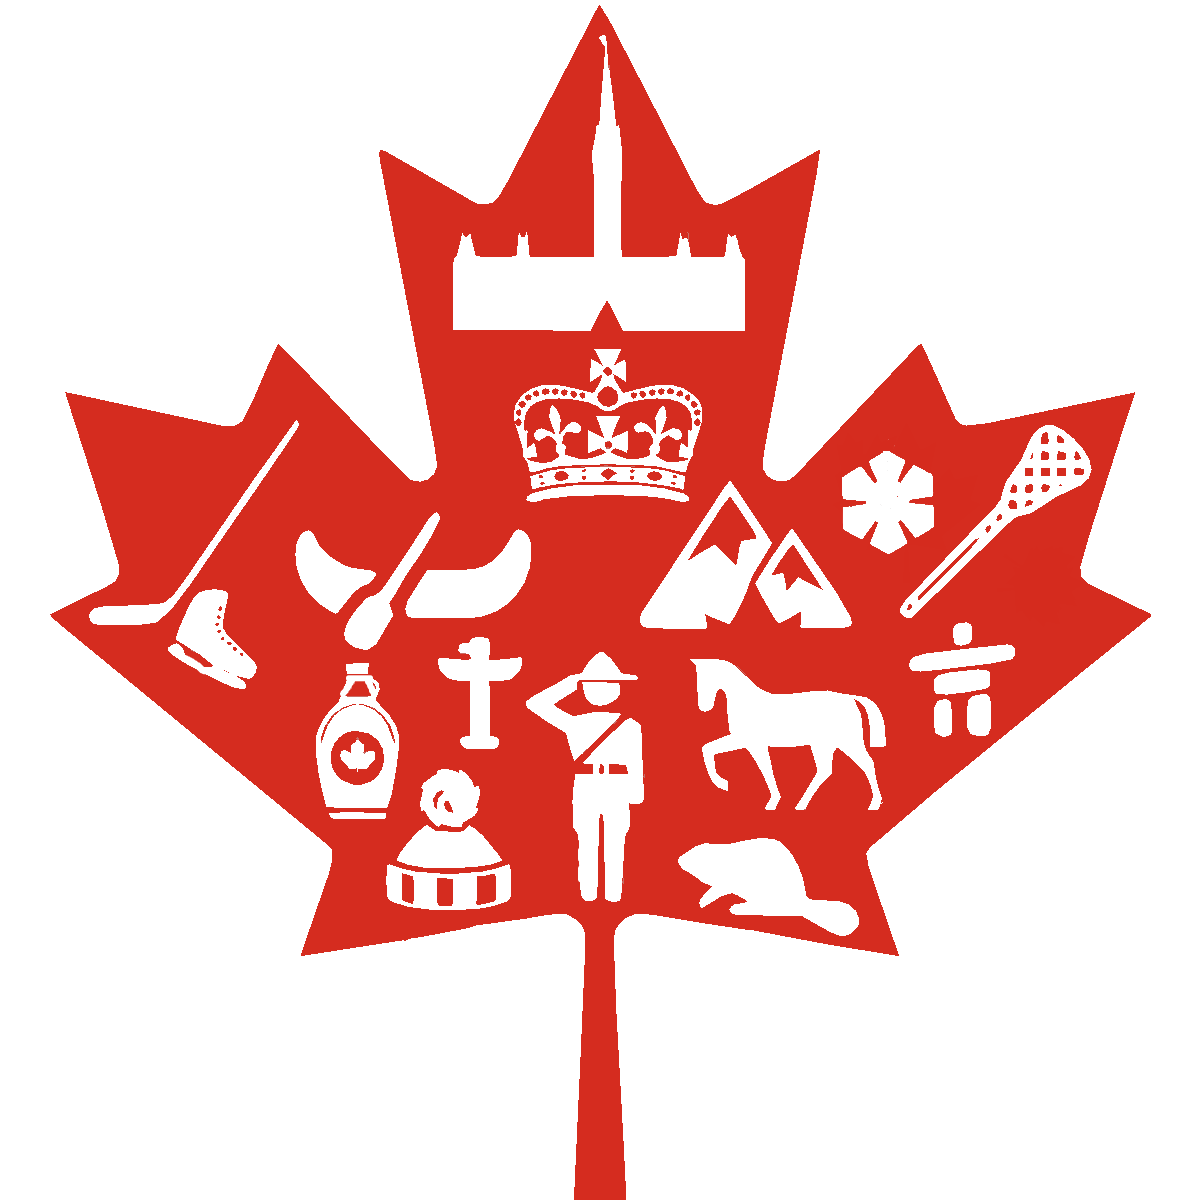 Toronto City Flag Transparent Image